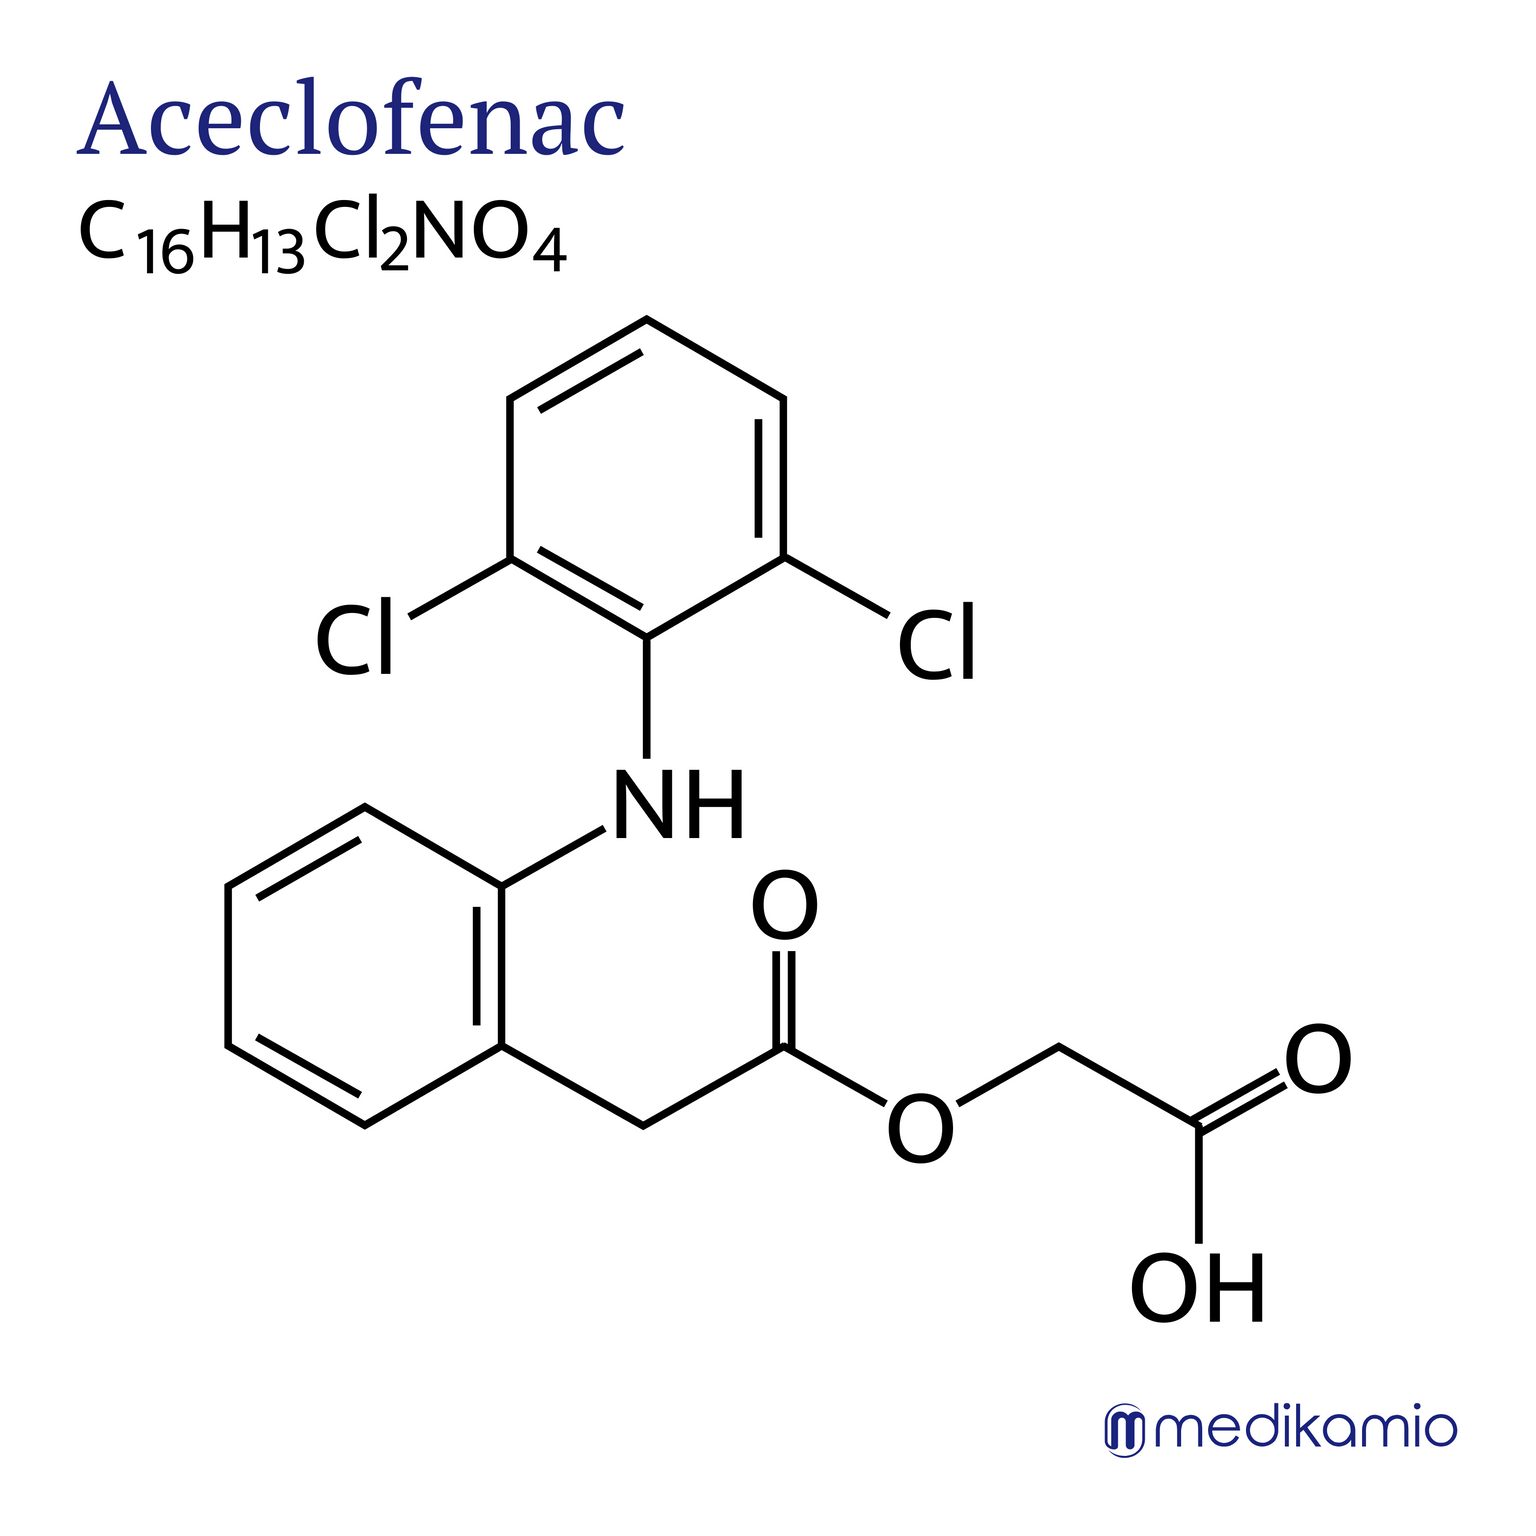 Grafische structuurformule van het werkzame bestanddeel aceclofenac